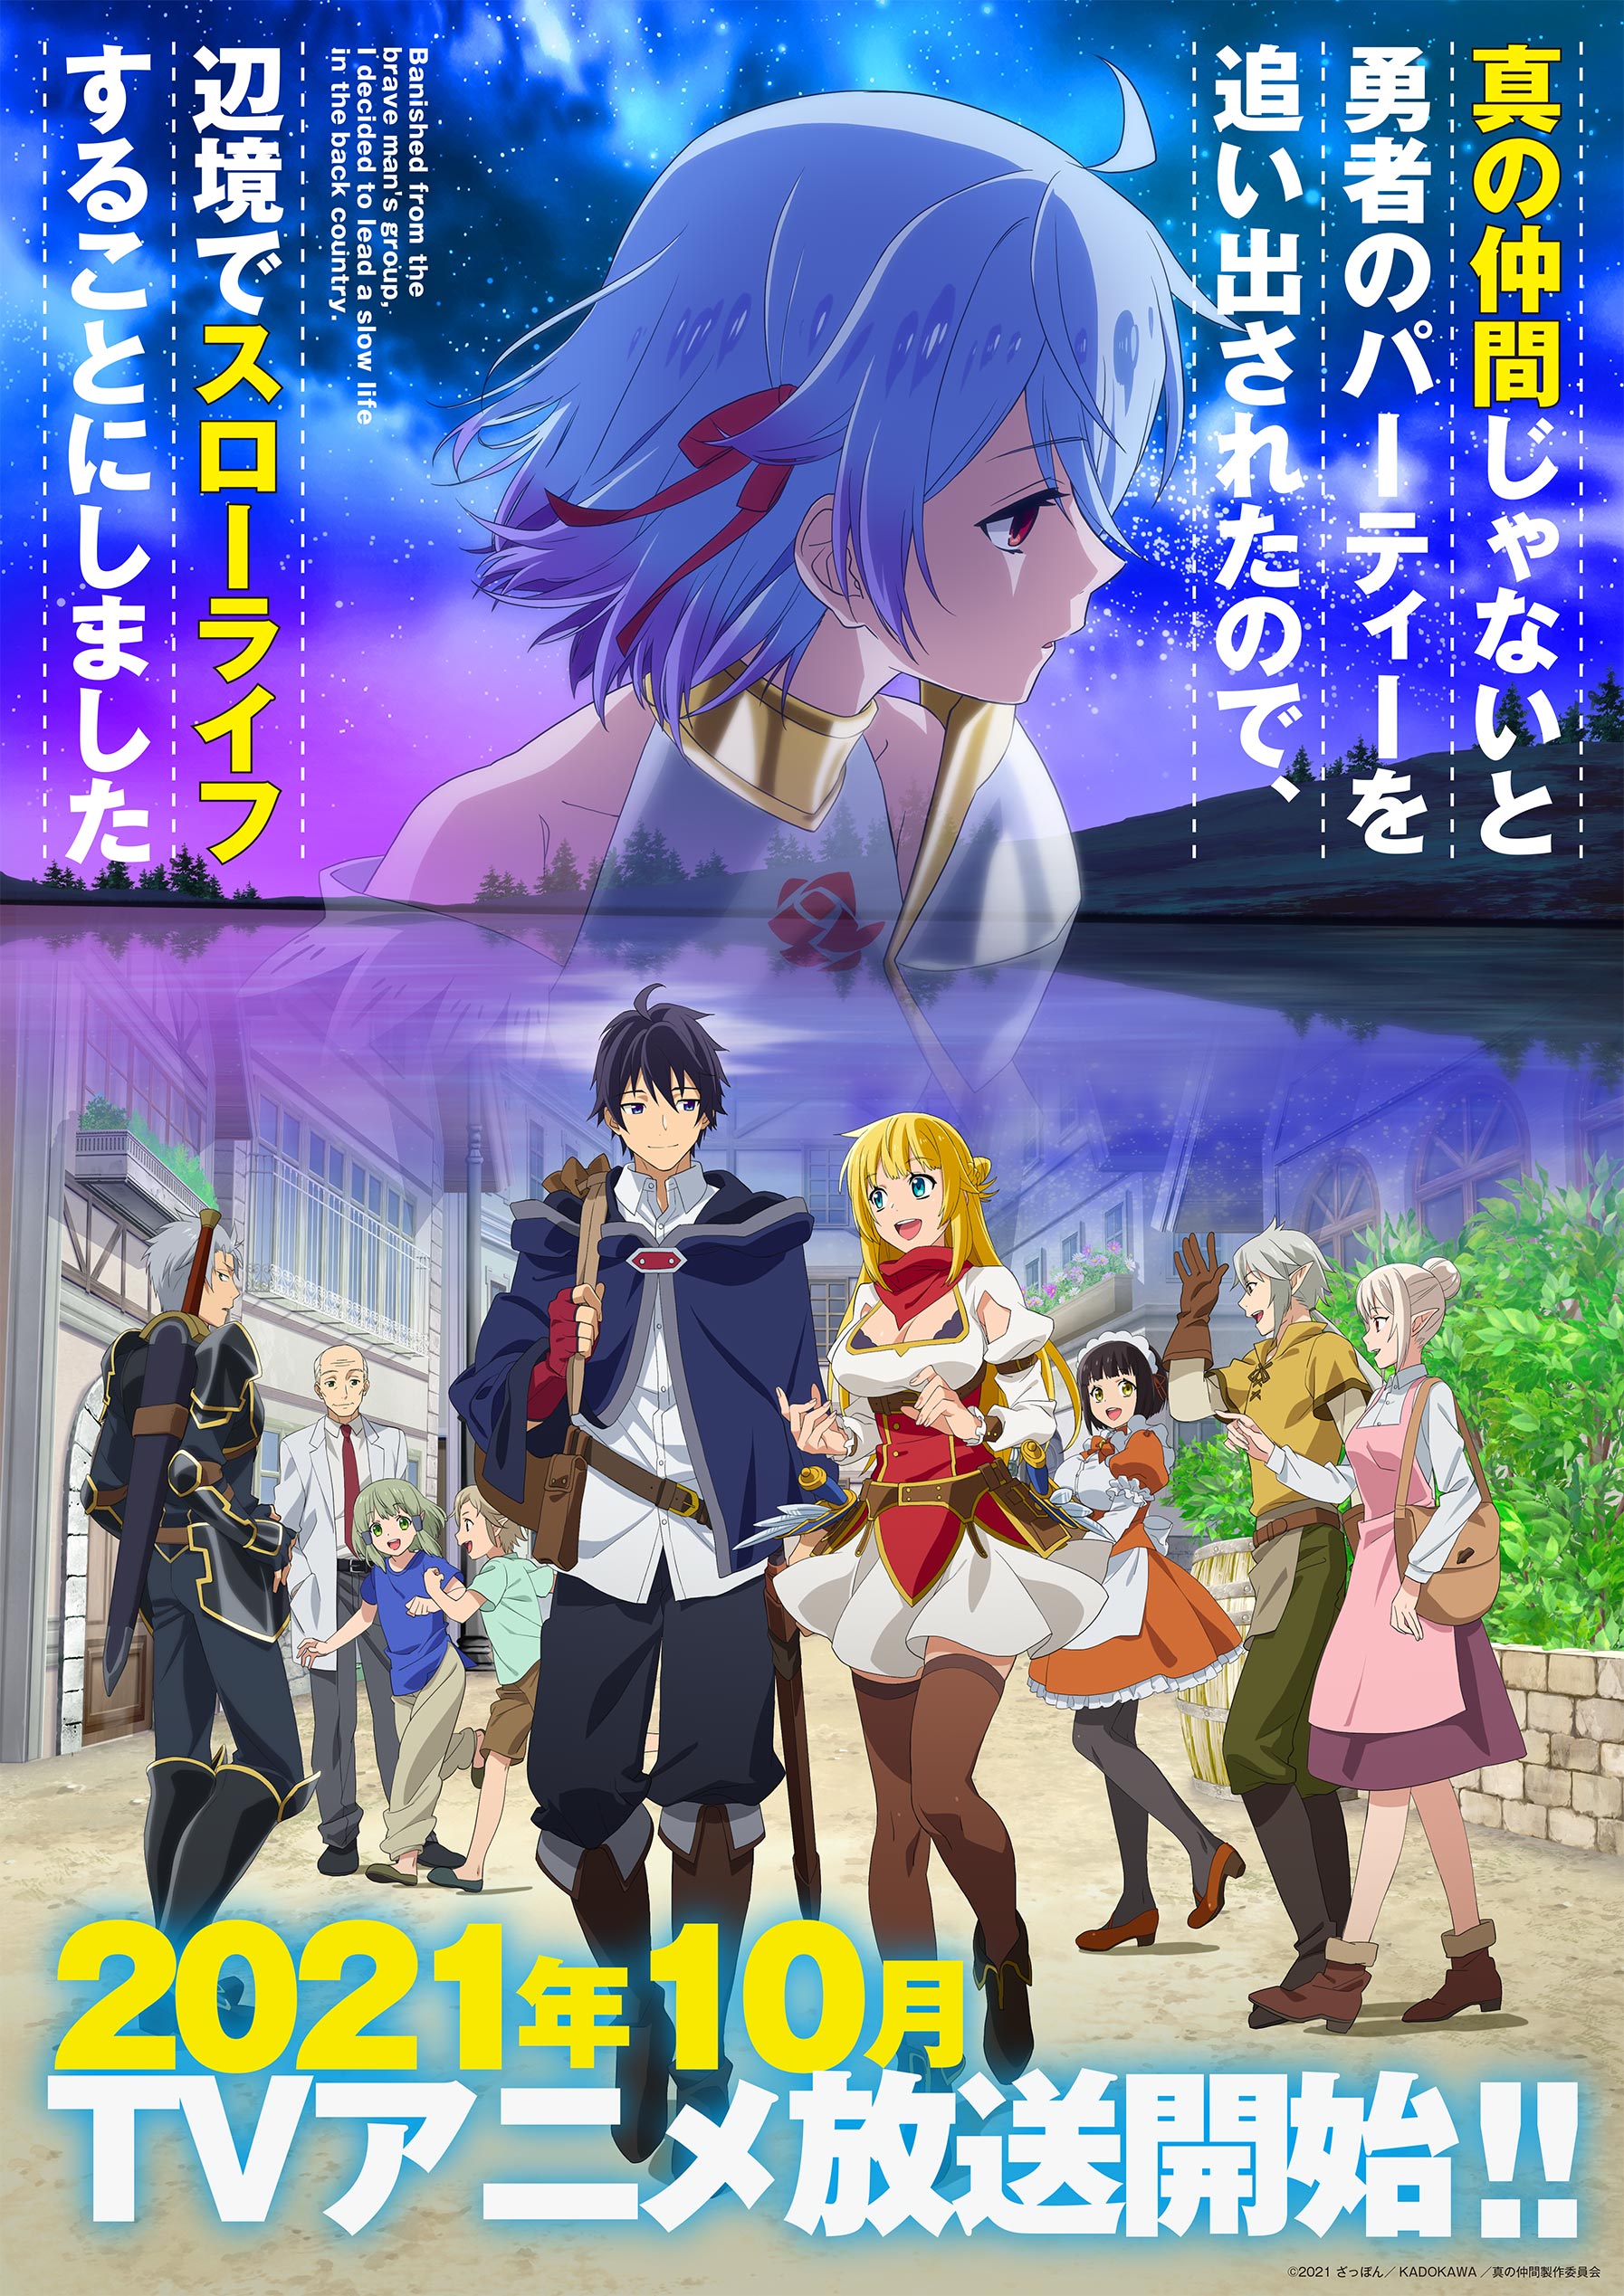 L'anime Higurashi no Naku Koro ni: Sotsu, annoncé - Adala News